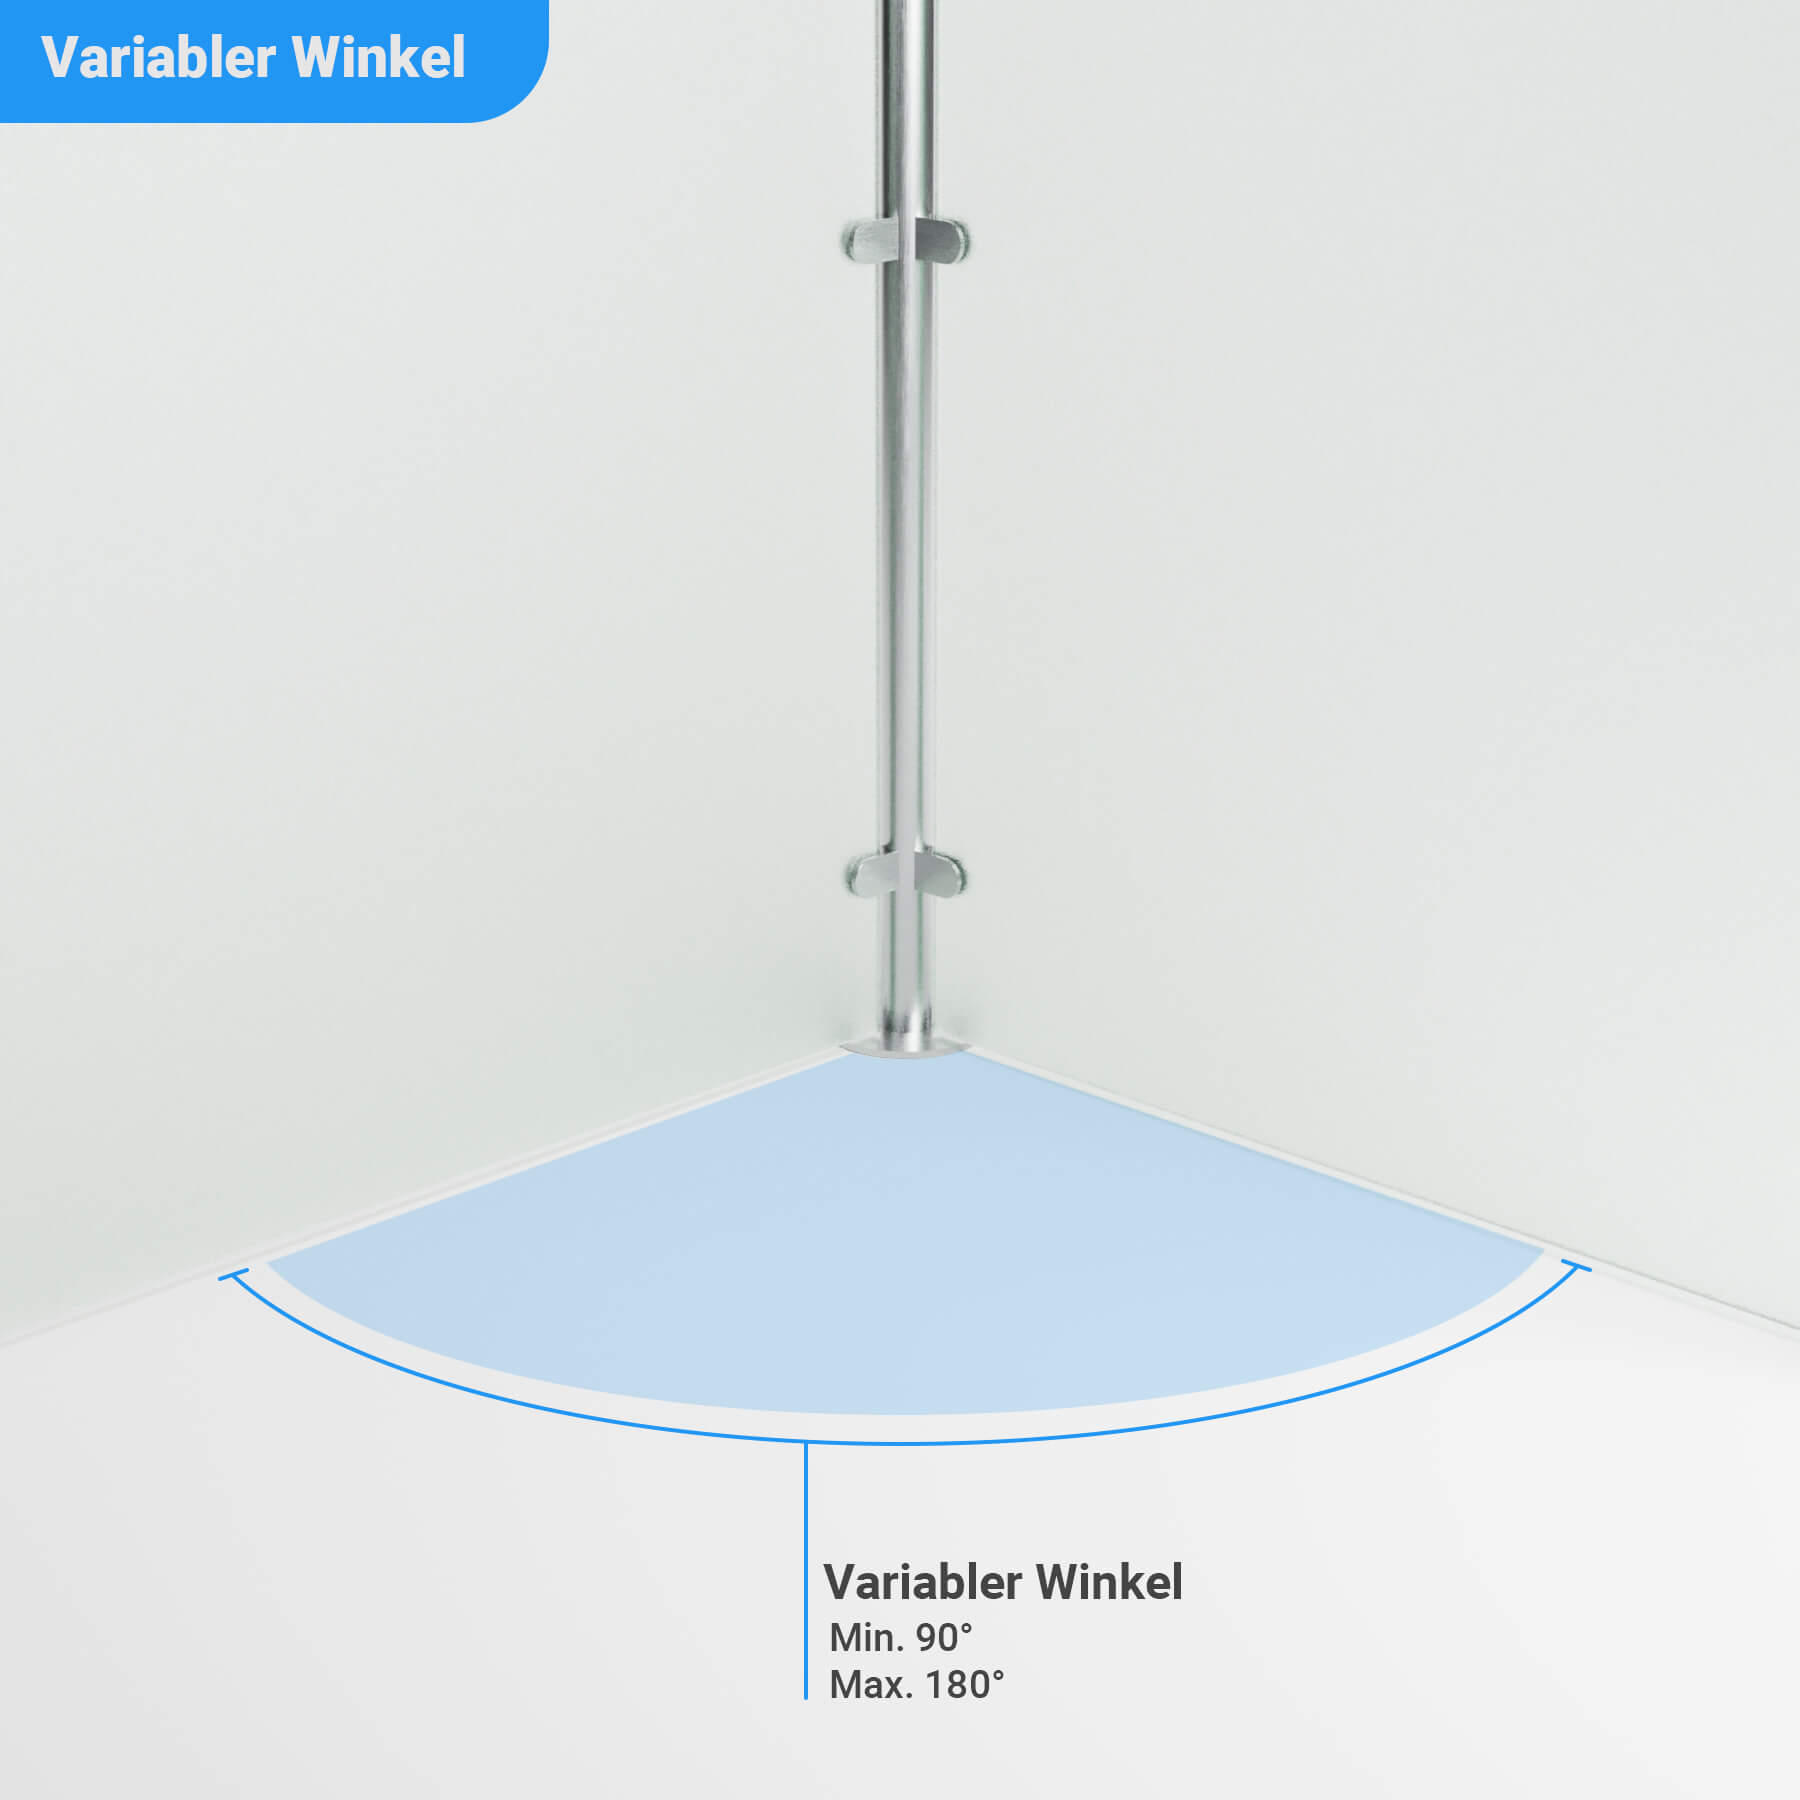 Wind- und Sichtschutz Transvent mit variablem Winkel zwischen den Glaselementen